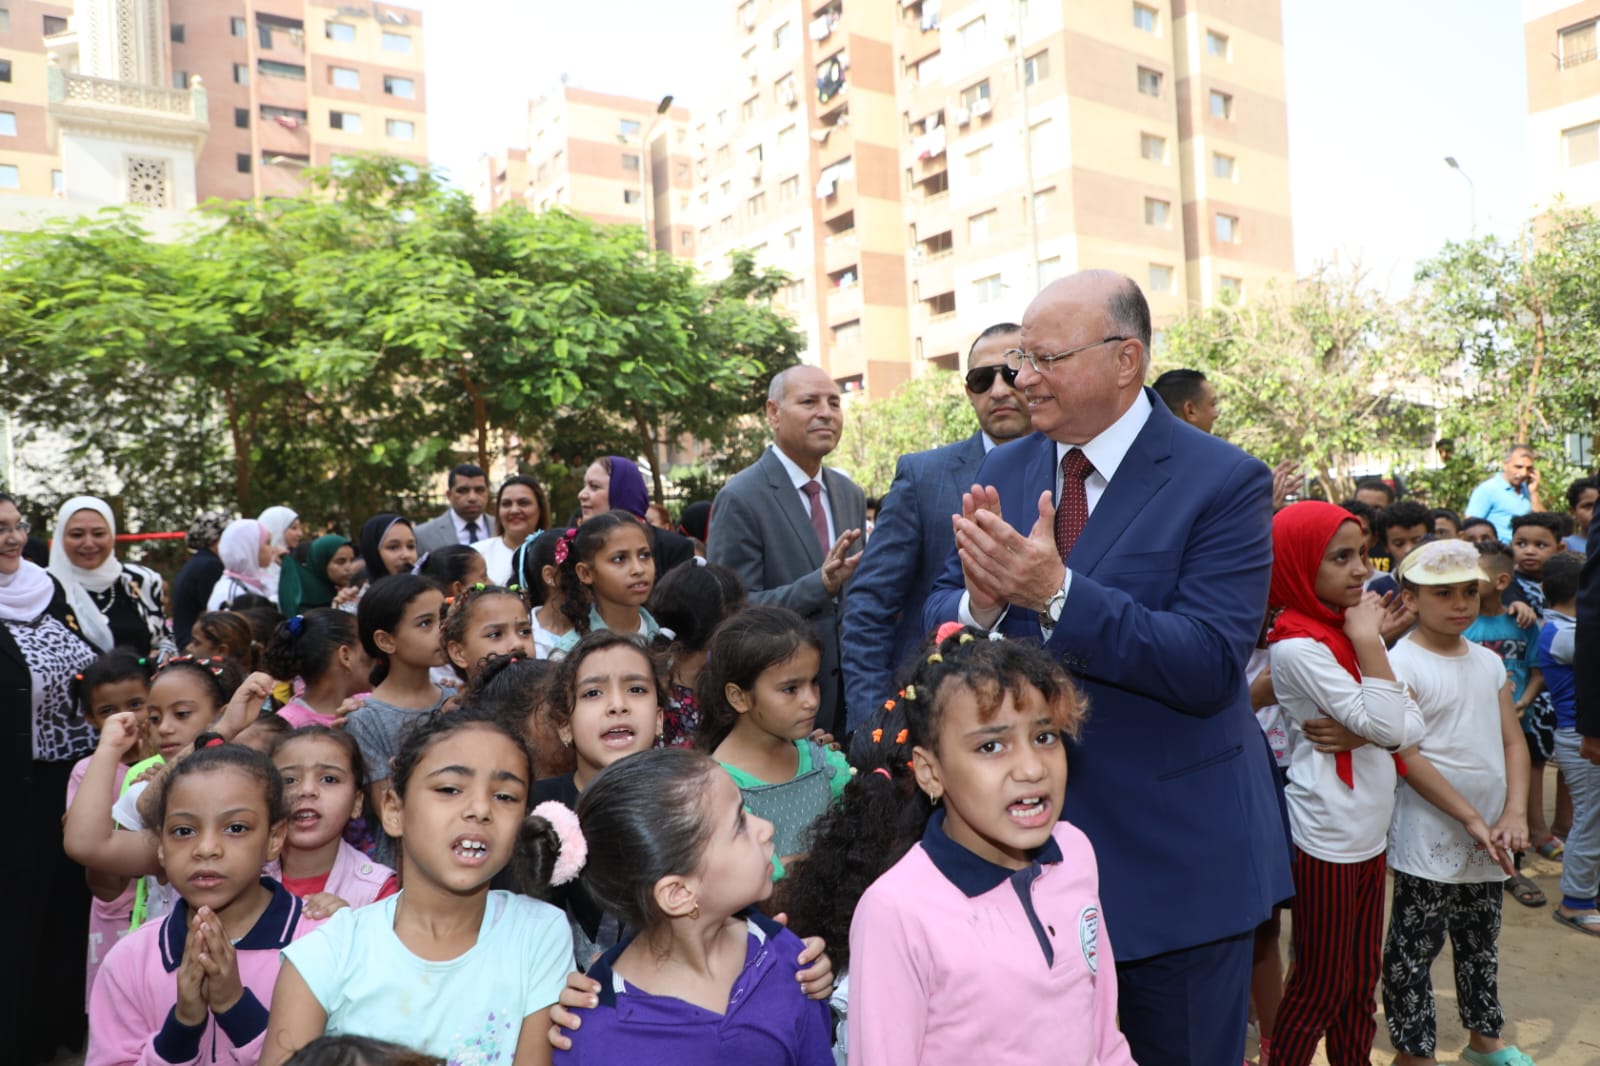 محافظ القاهرة يوزع شنط مدرسية مجانا على الطلبة بمشروع أهالينا (6)